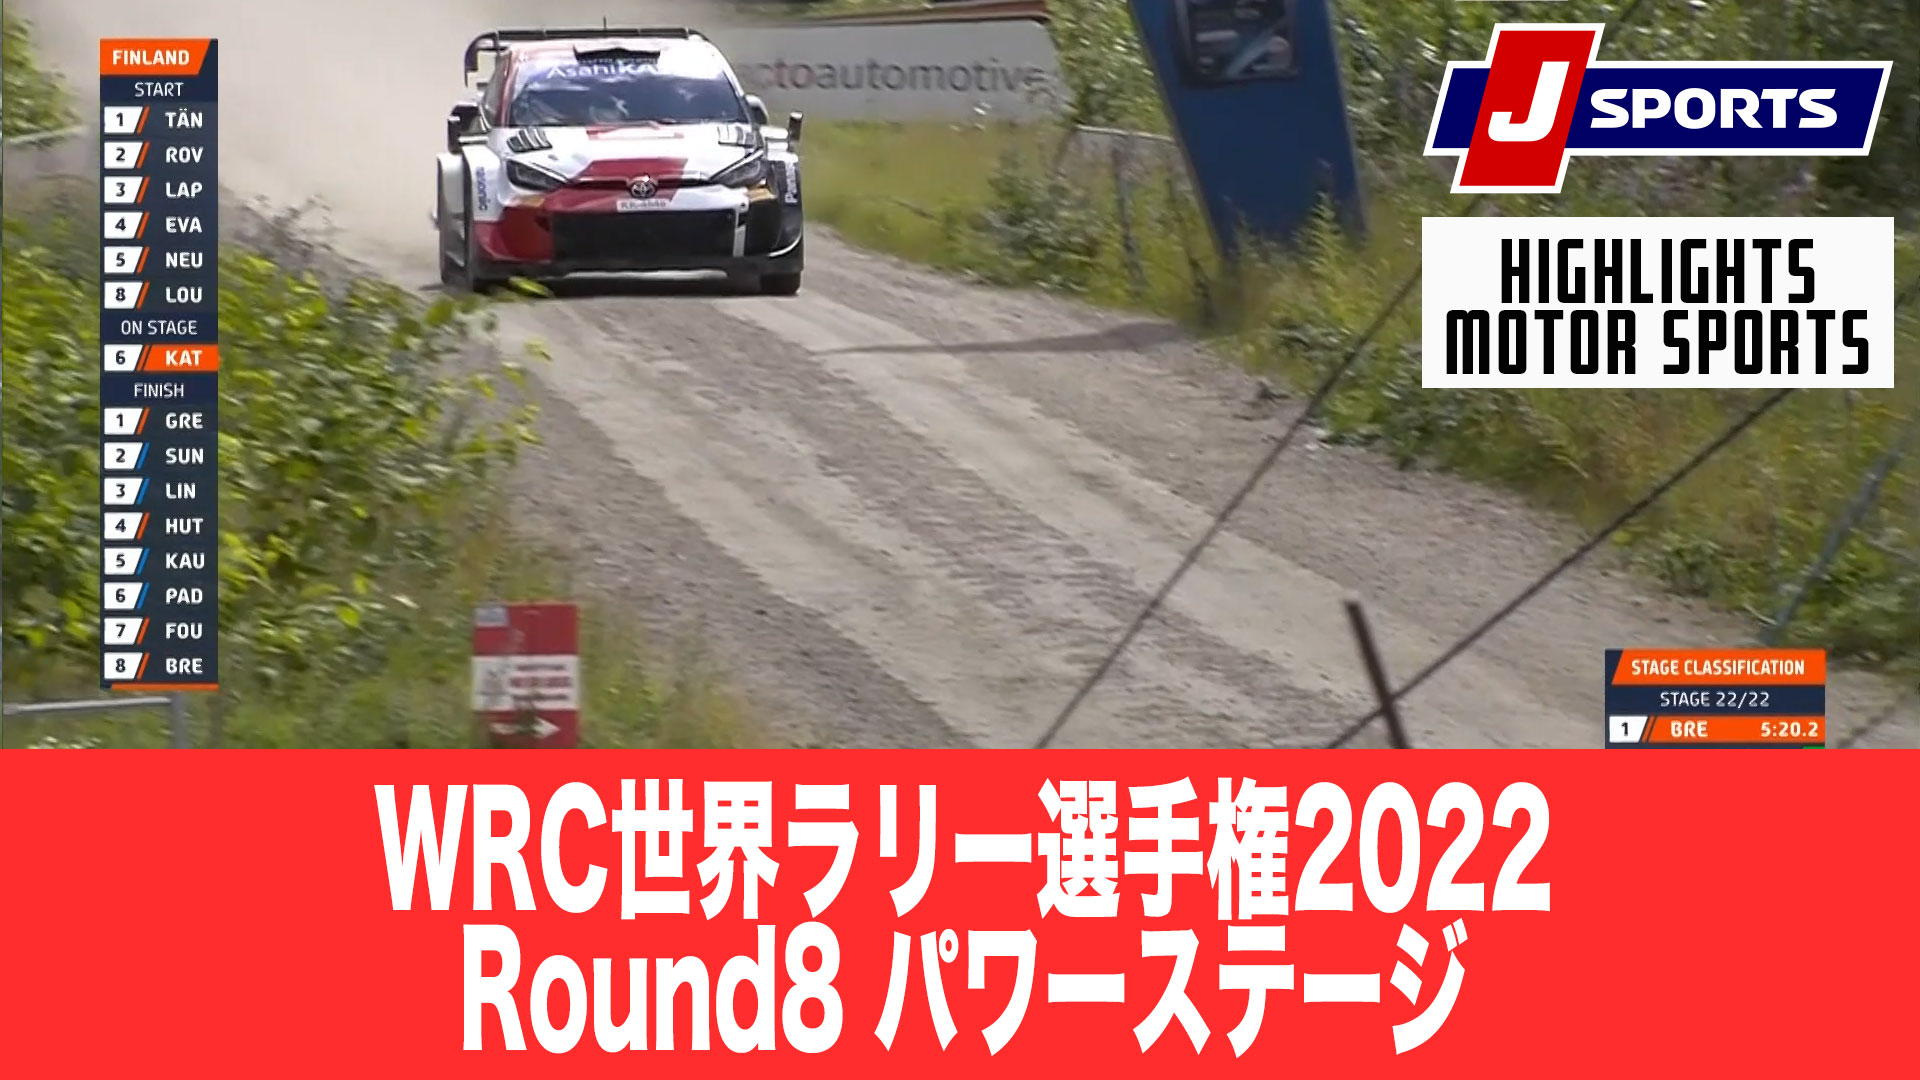 【ハイライト】WRC世界ラリー選手権2022 Round8 ラリー・フィンランド パワーステージ